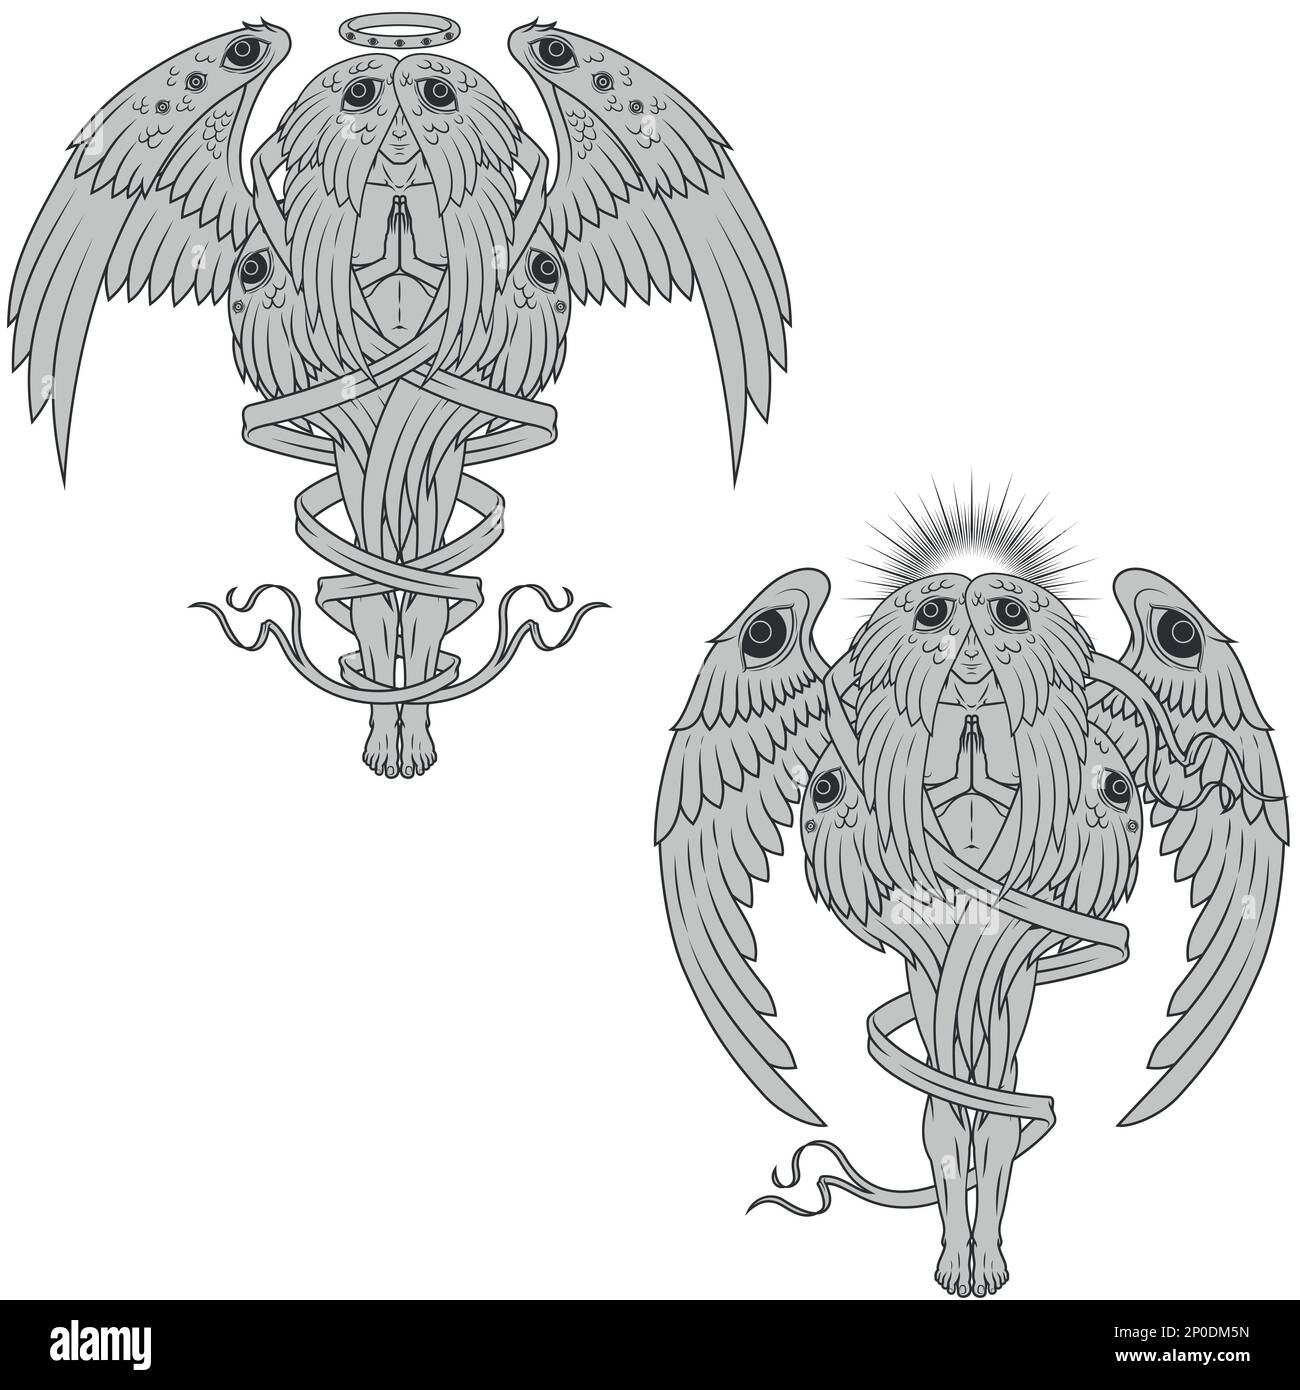 Dessin vectoriel d'ange de prière avec un halo, séraphé avec six ailes entourées d'un ruban, archange avec un halo et des plumes, ange de l'église catholique Illustration de Vecteur